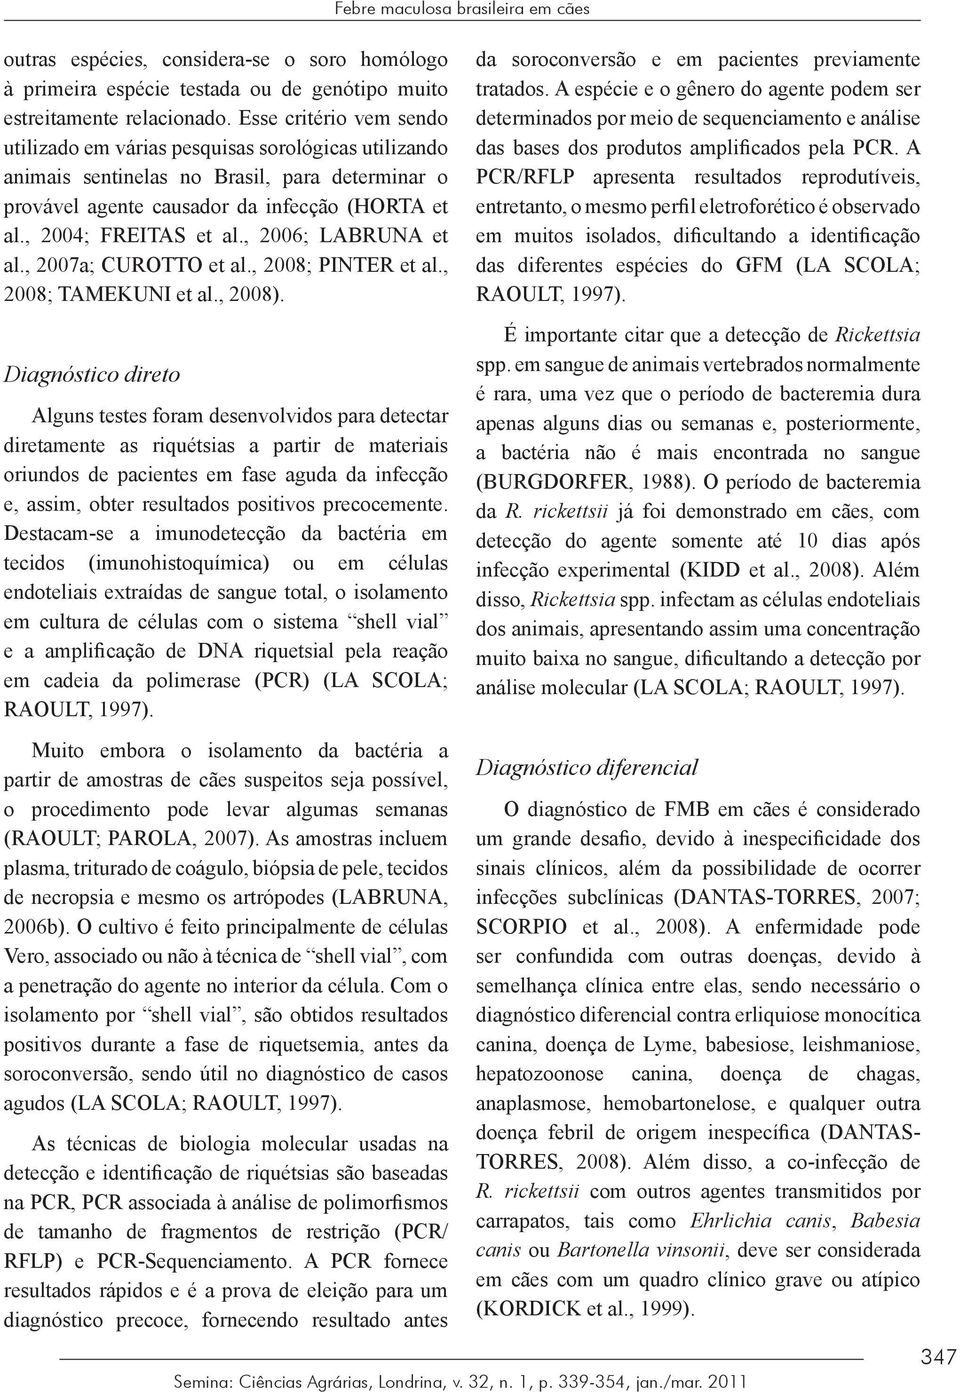 , 2006; LABRUNA et al., 2007a; CUROTTO et al., 2008; PINTER et al., 2008; TAMEKUNI et al., 2008).